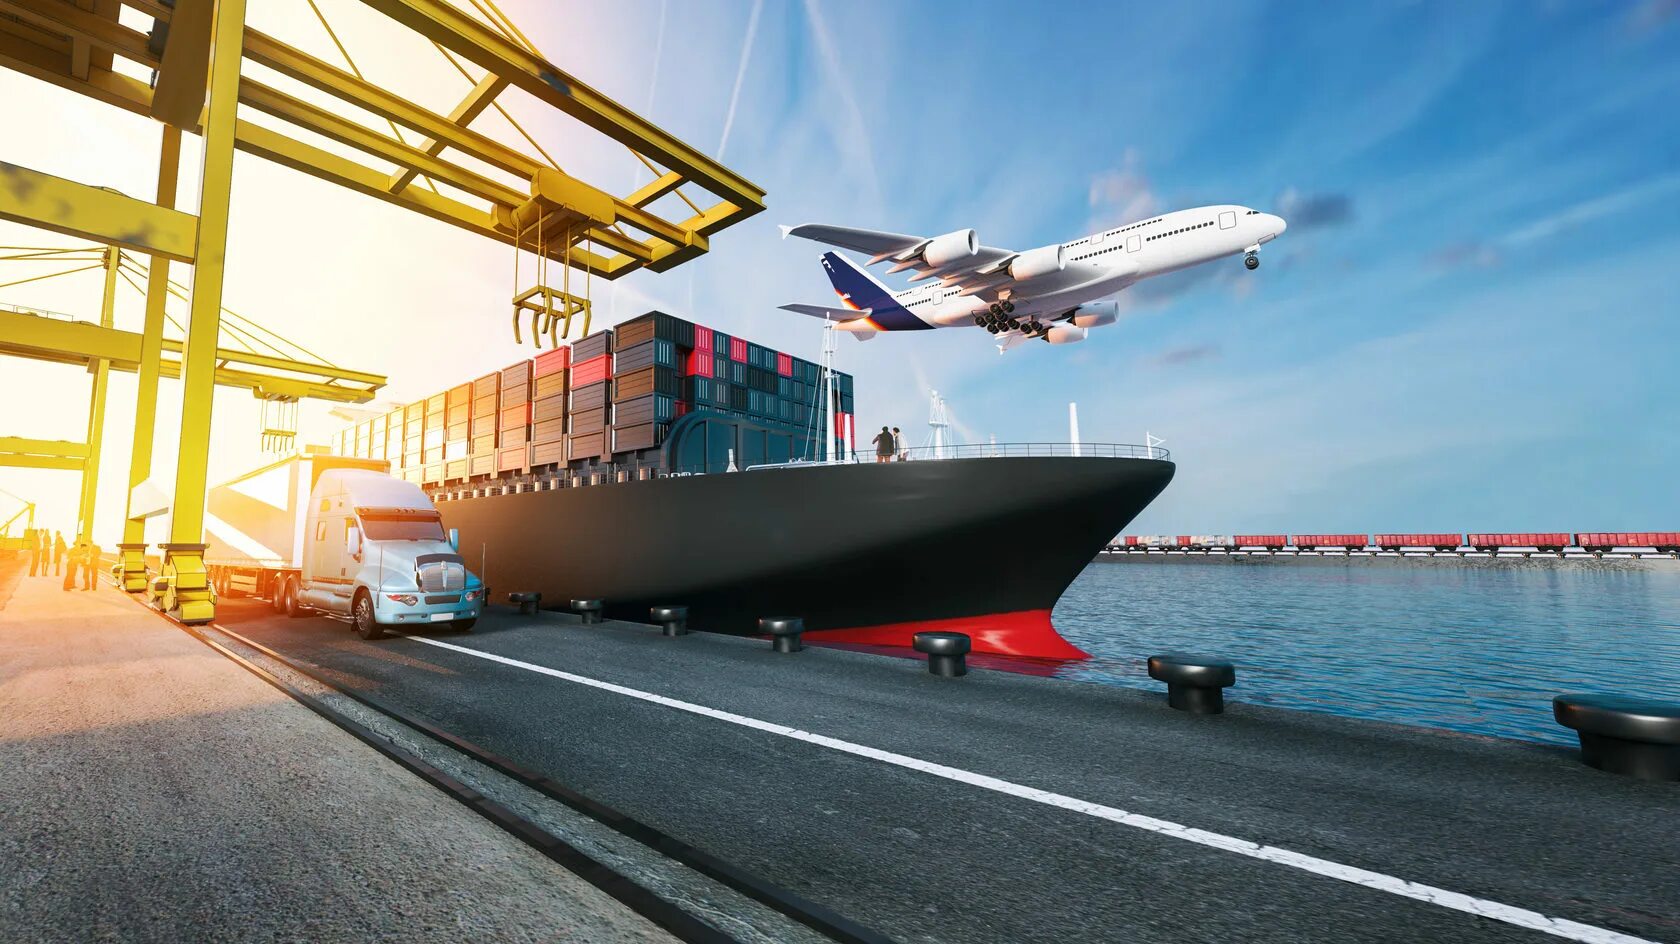 Международный водный транспорт. Фрейт Форвардинг. Транспортная компания Cargo transport Logistics. Морской транспорт. Самолеты, машины, корабли.